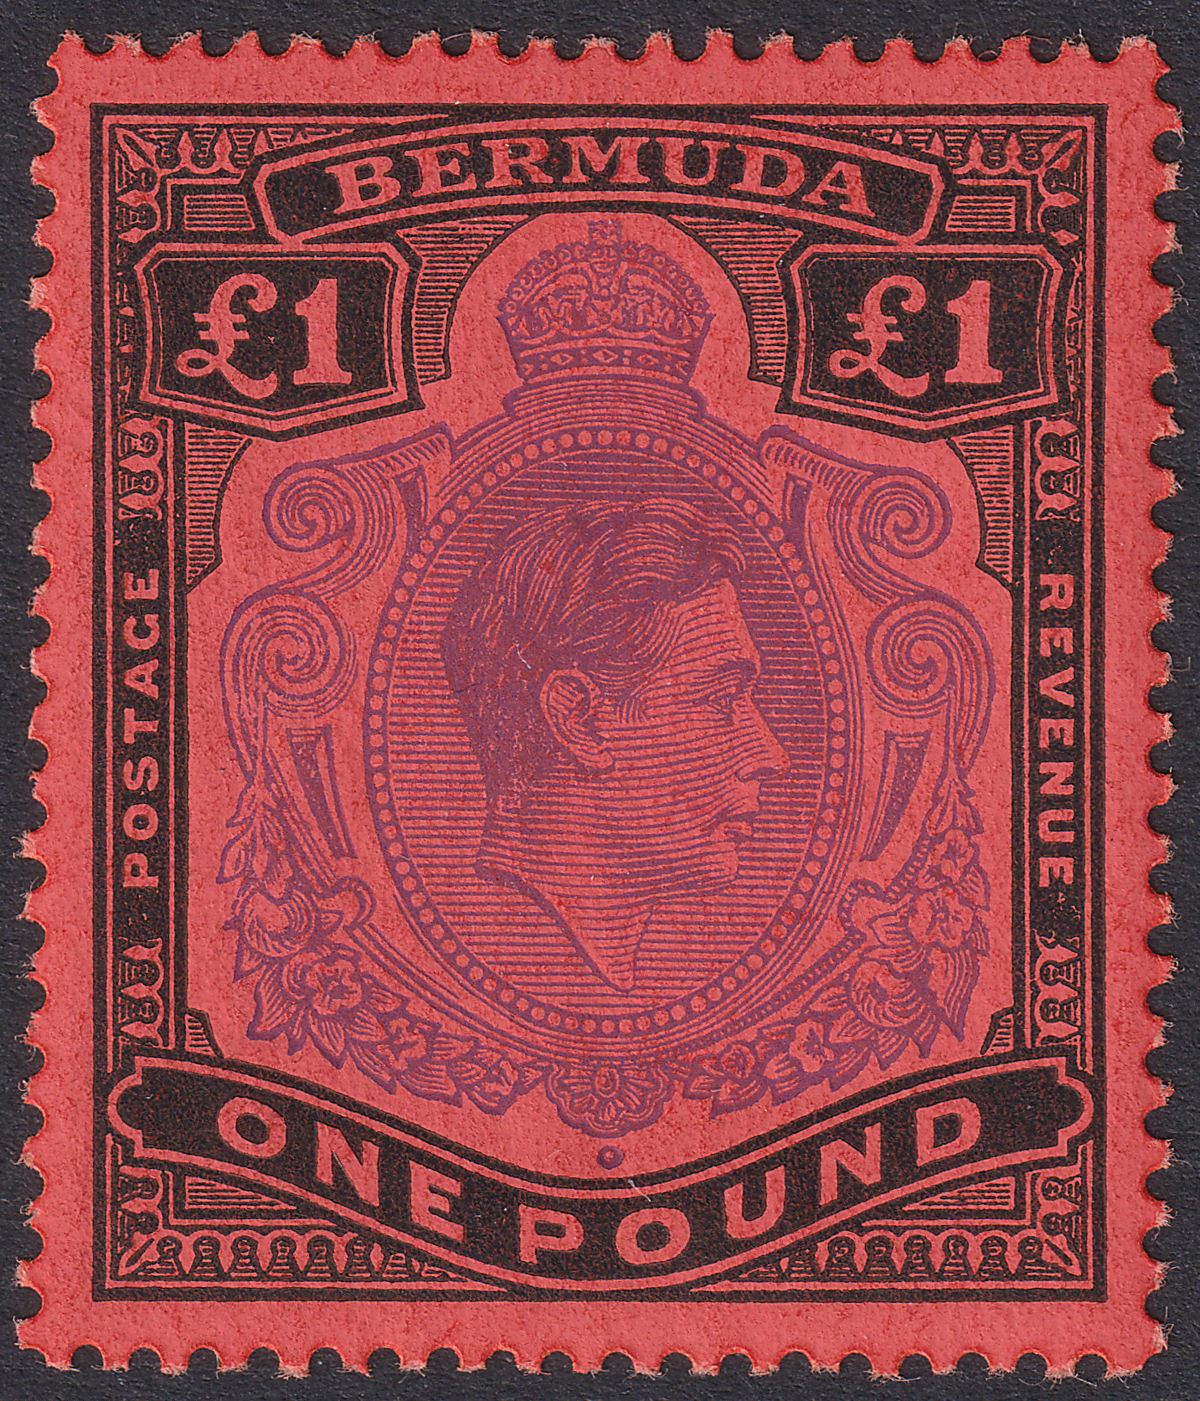 Bermuda 1952 KGVI £1 Violet and Black on Scarlet p13 Mint SG121d